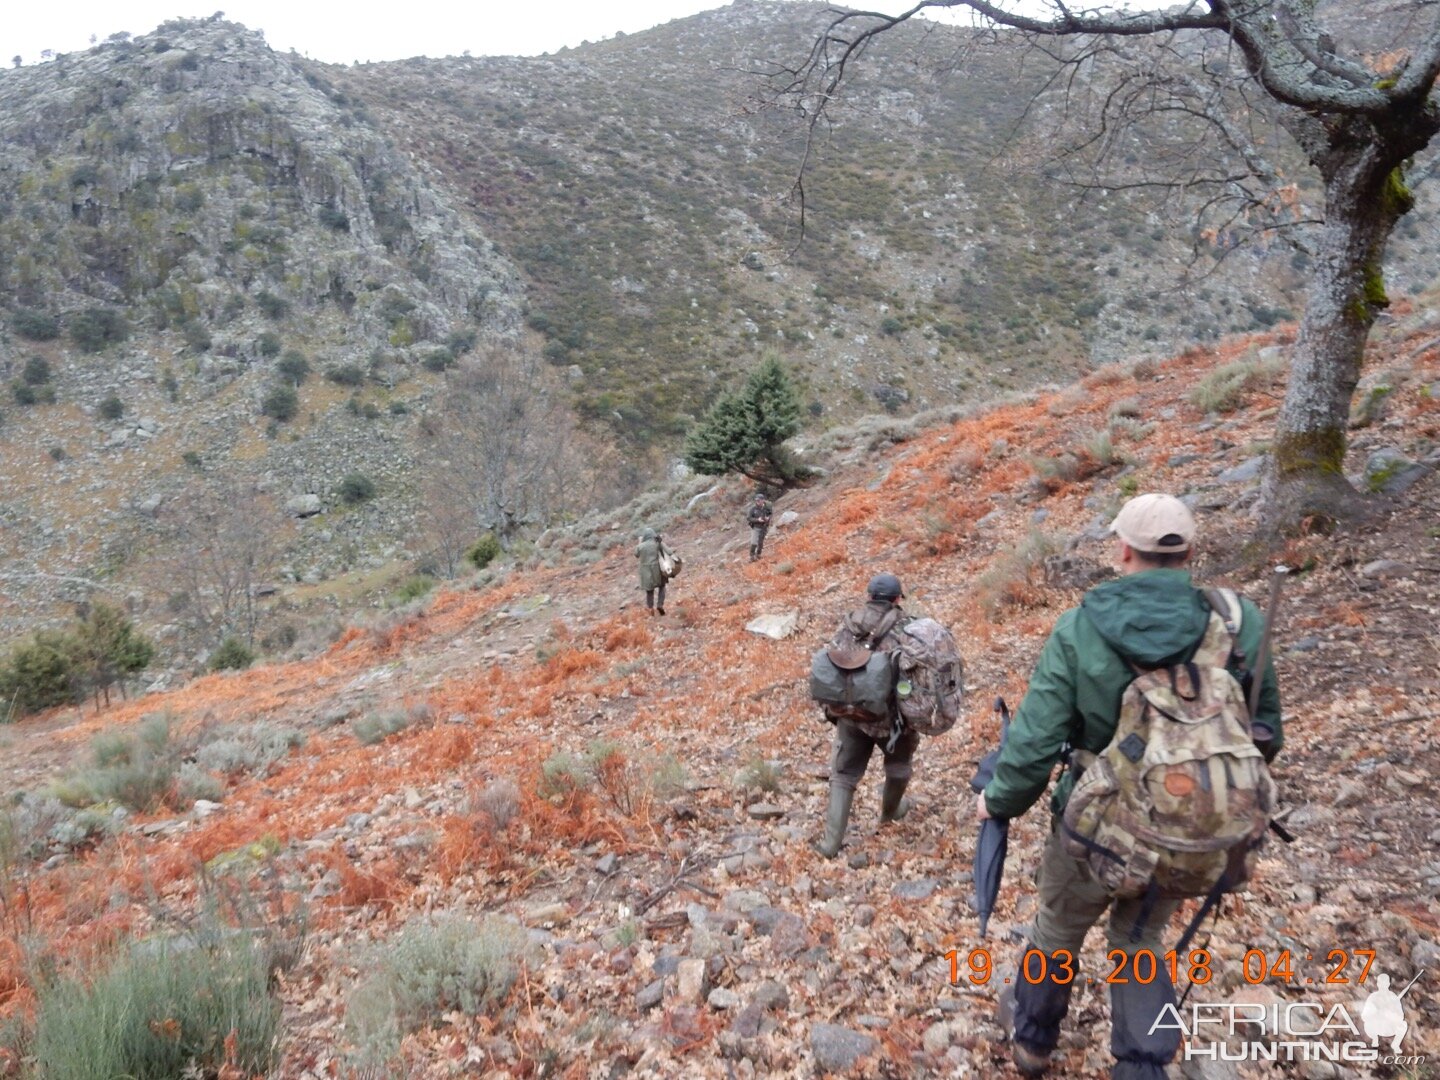 Hunting Spain